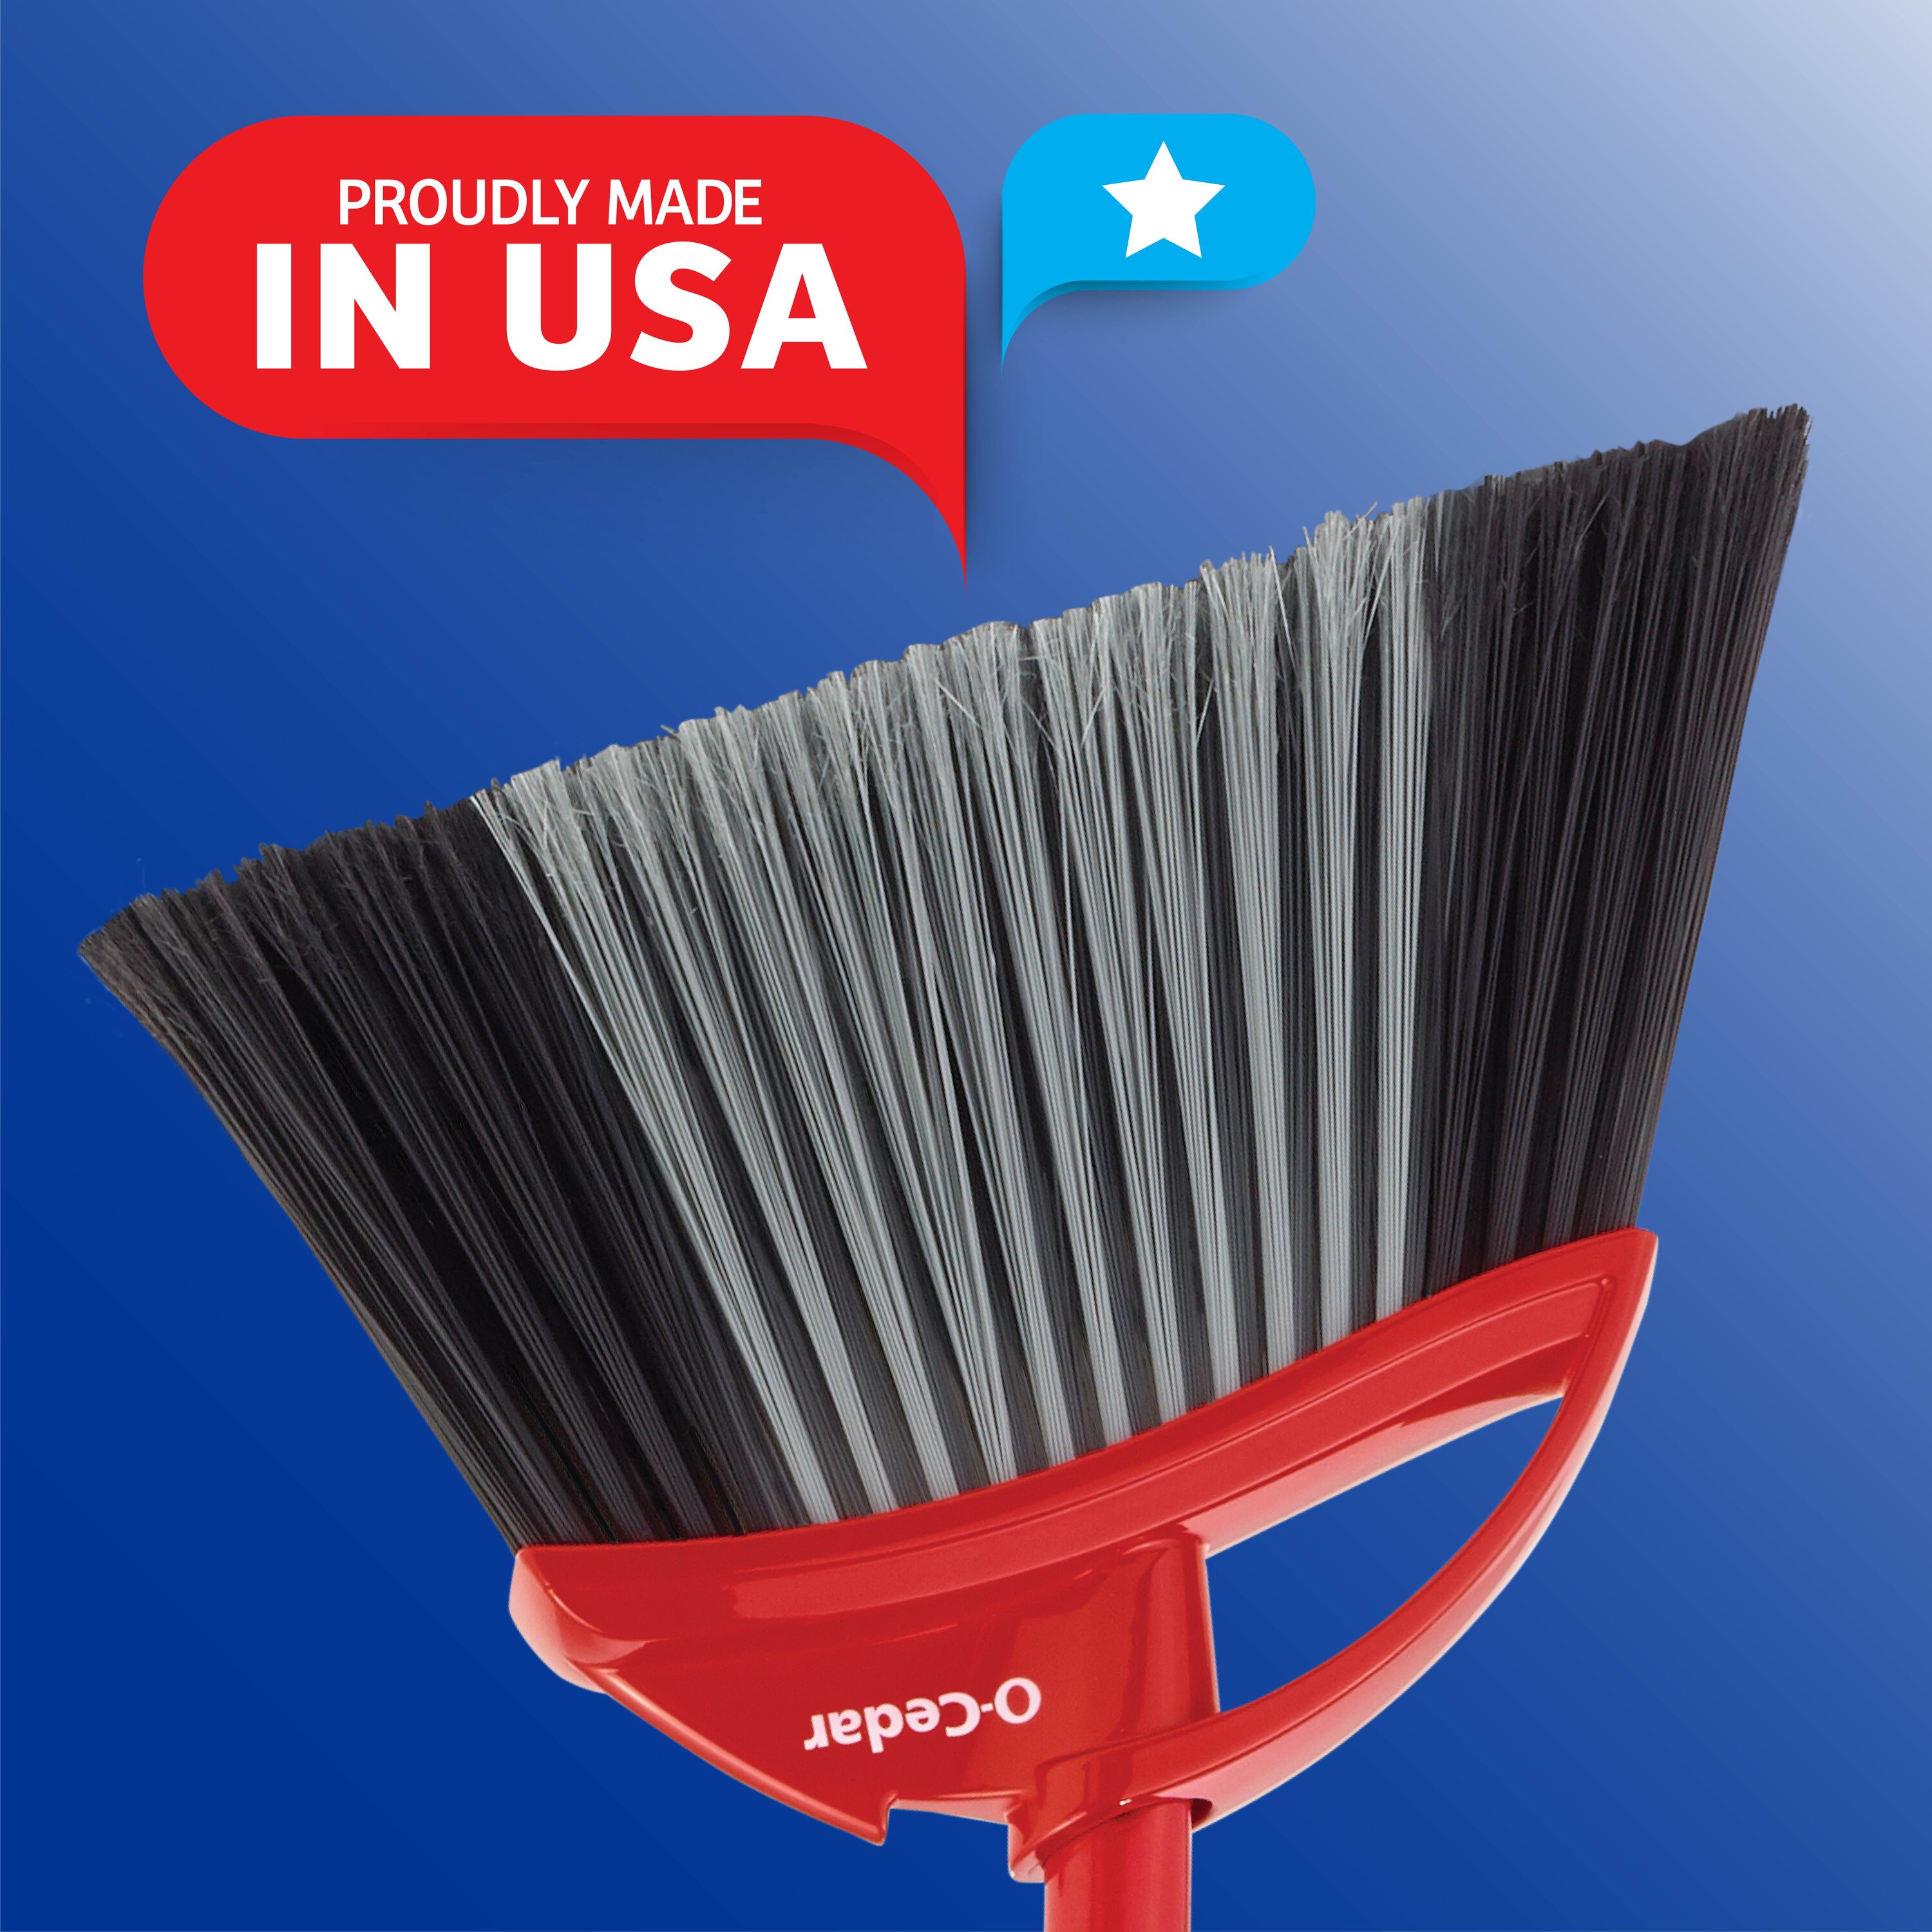 O Cedar® 9 Utility Brush w/Polypro Bristles